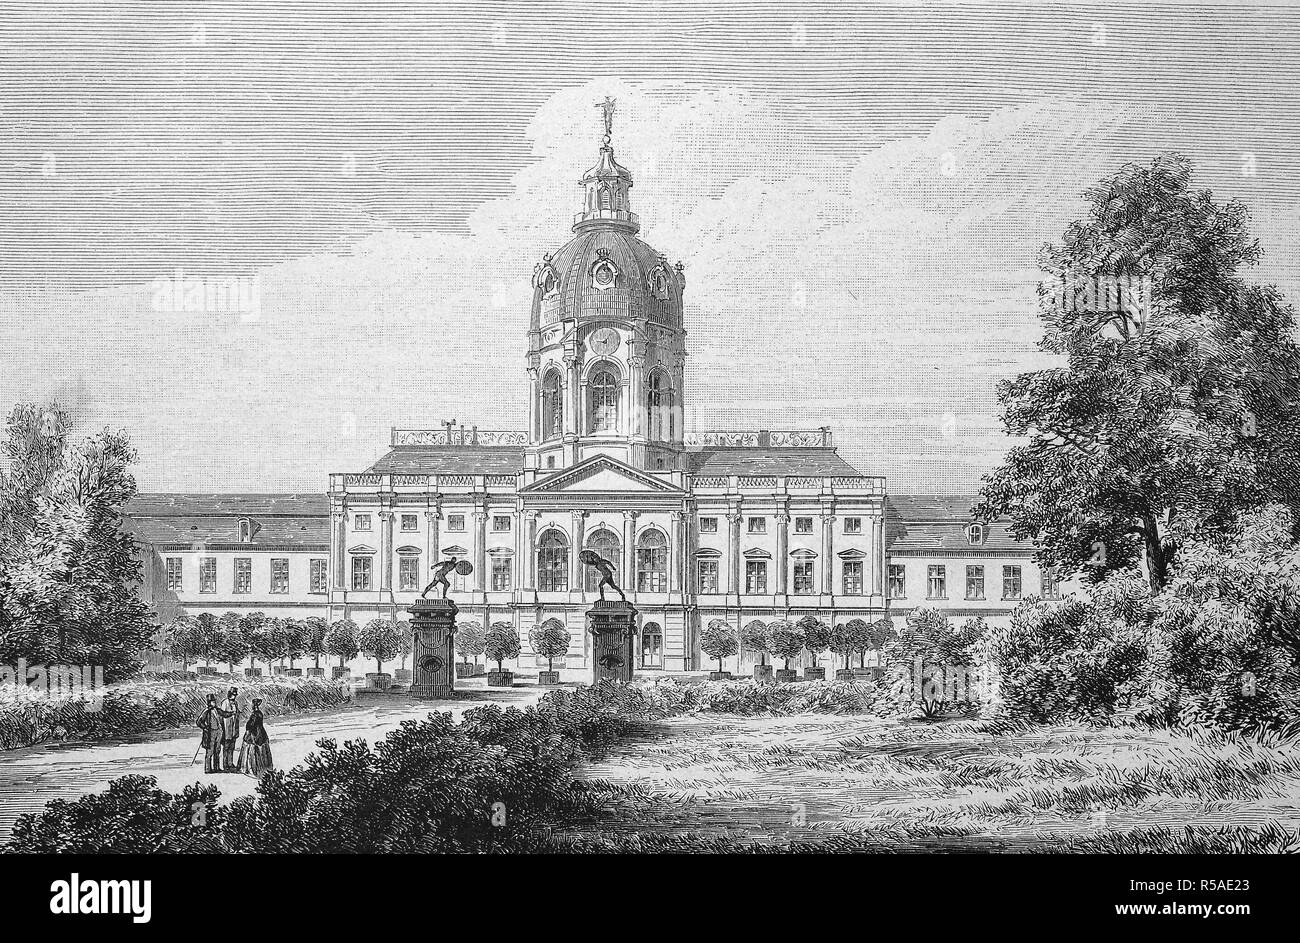 Le palais royal à Charlottenburg, Berlin, gravure sur bois de l'année 1888, Allemagne Banque D'Images